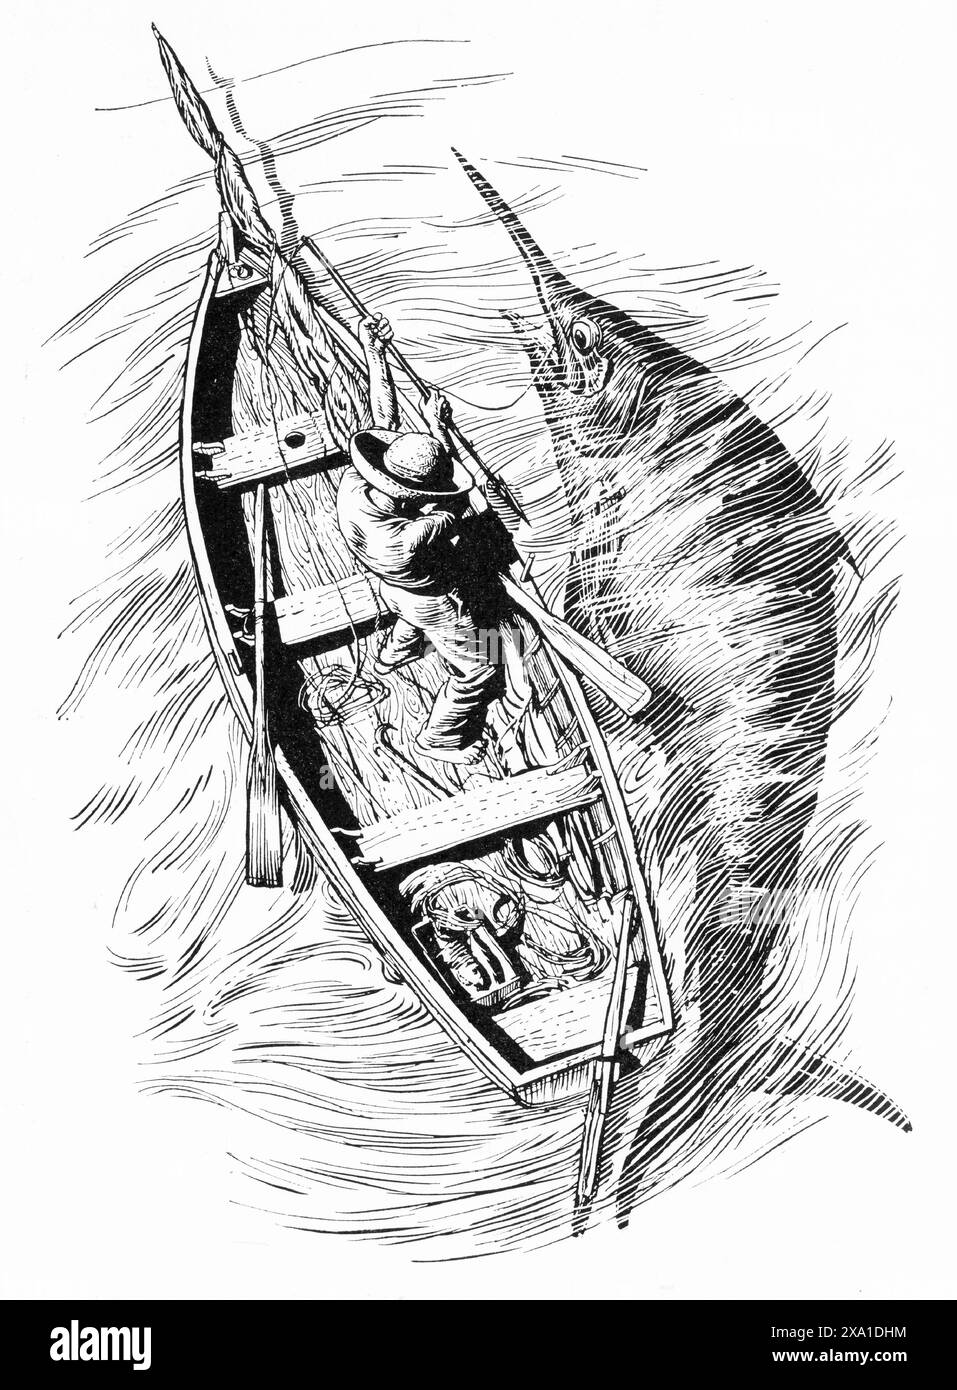 Illustration tirée du livre le vieil homme et la mer d'Ernest Hemingway, publié par la Book Folio Society en 1953. Œuvre de Raymond Sheppard. Banque D'Images